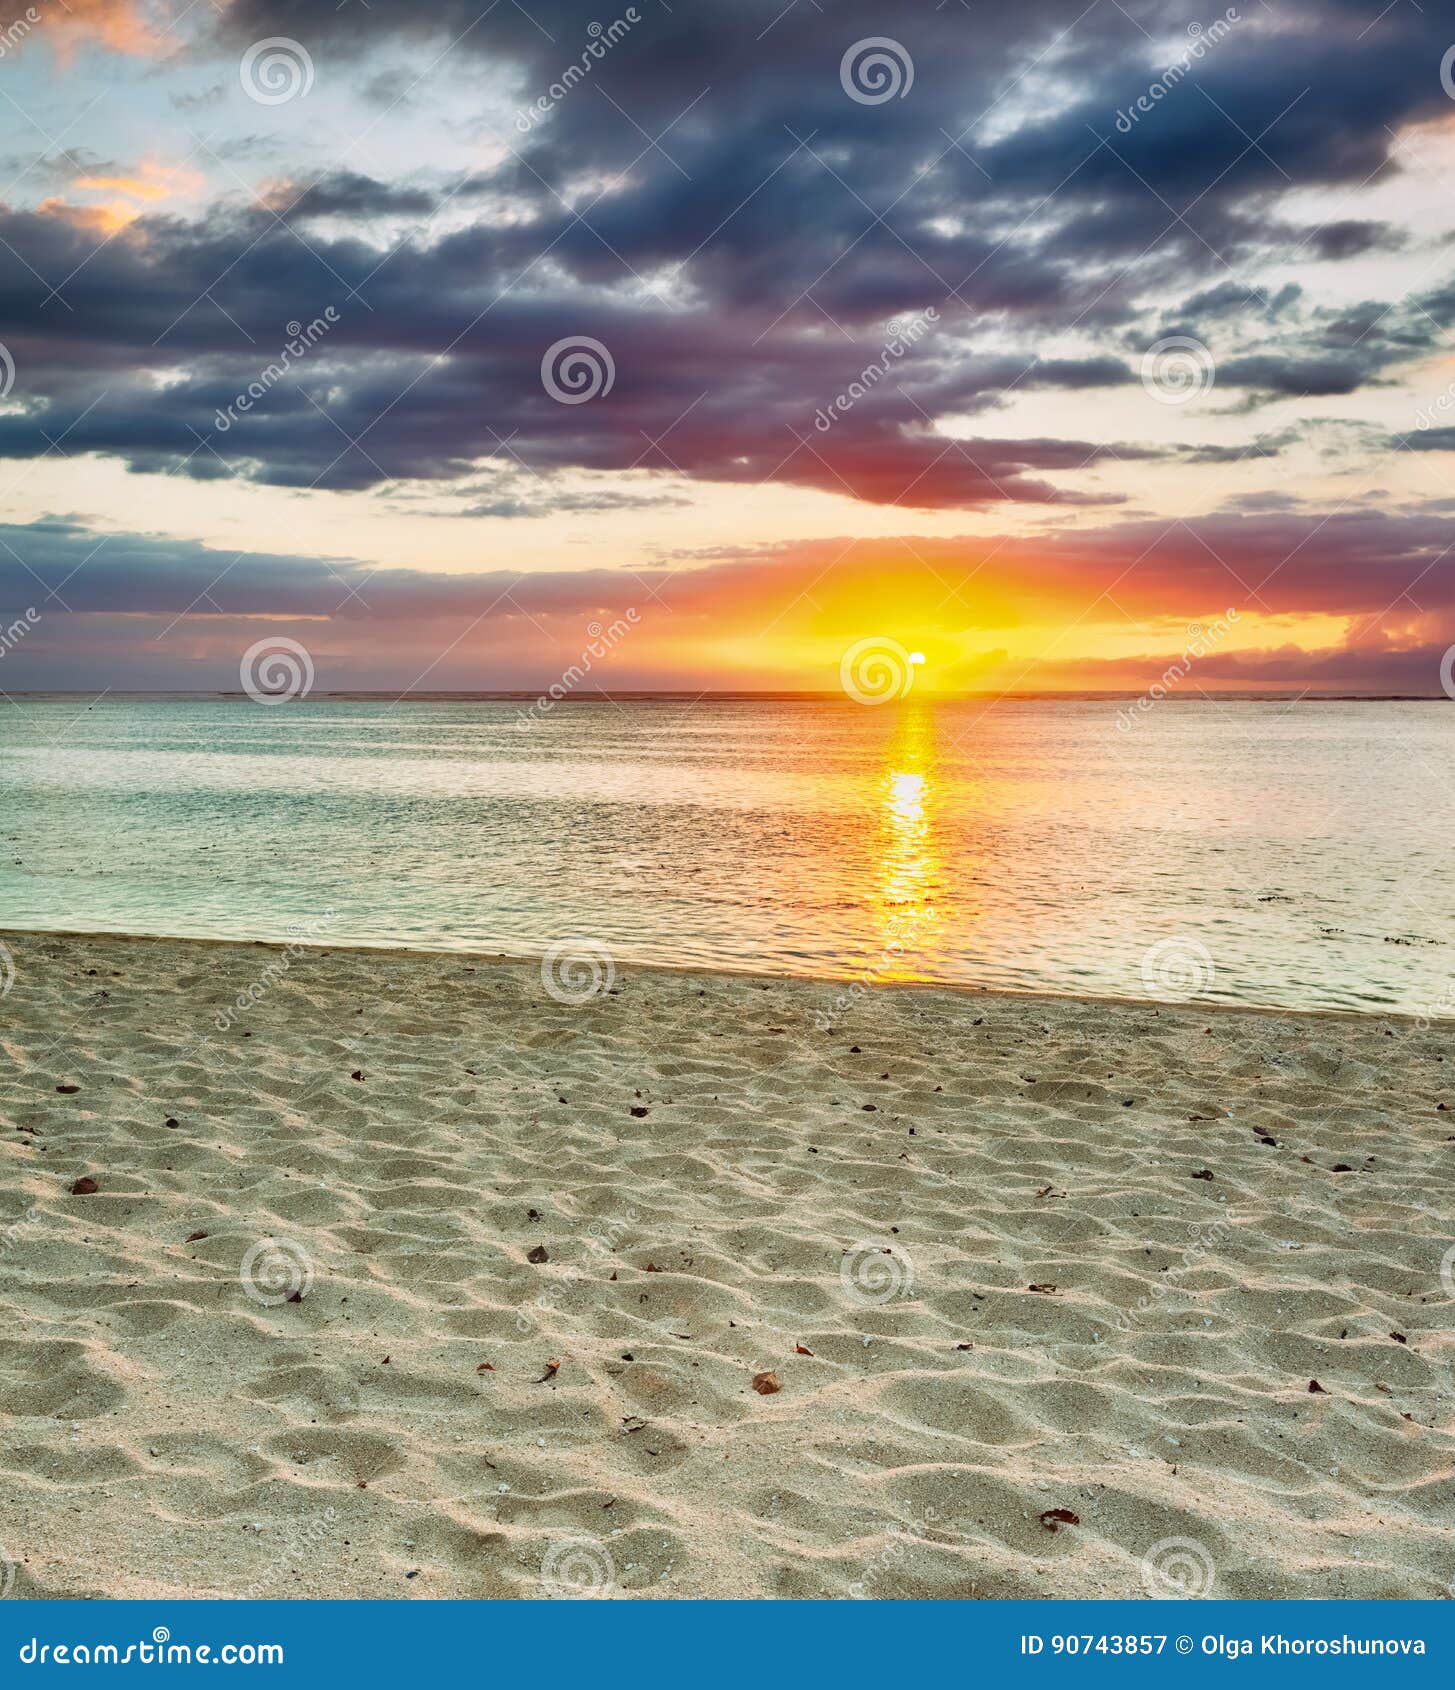 le morn beach at sunset.